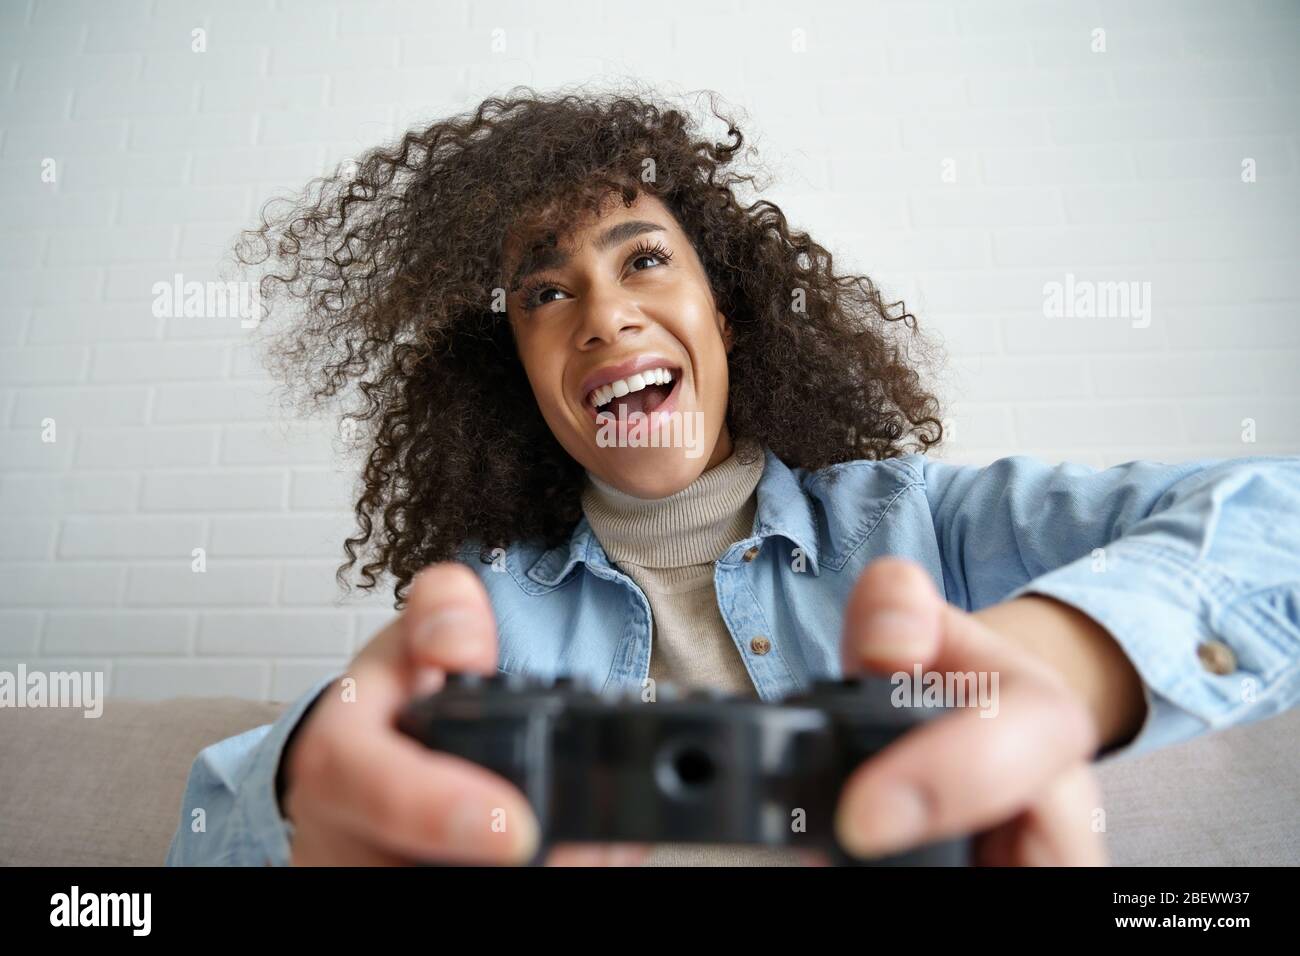 Emocionada chica africana jugador sosteniendo joystick controlador jugando videojuego. Foto de stock